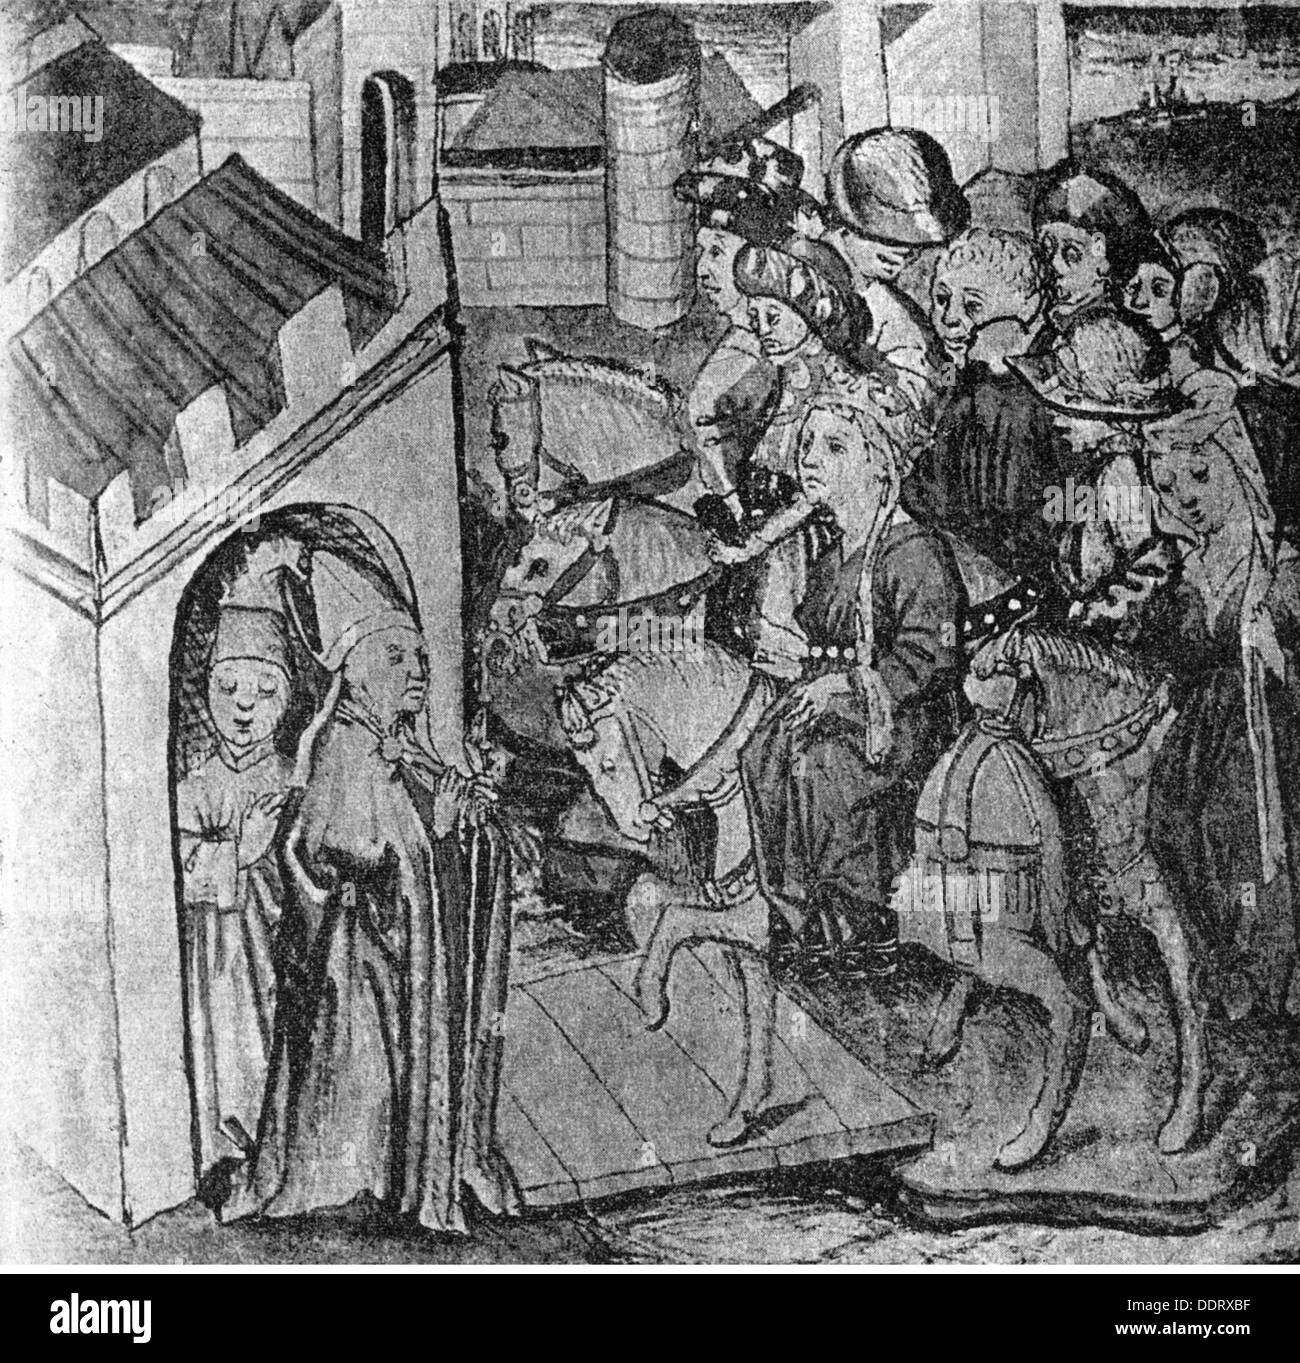 Literatur, Nibelungen, Kriemhild wird zu König Etzel geführt, Illustration aus der Hündeshagen-Handschrift B, Augsburg, um 1436 - 1442, Zusatzrechte-Clearences-nicht vorhanden Stockfoto